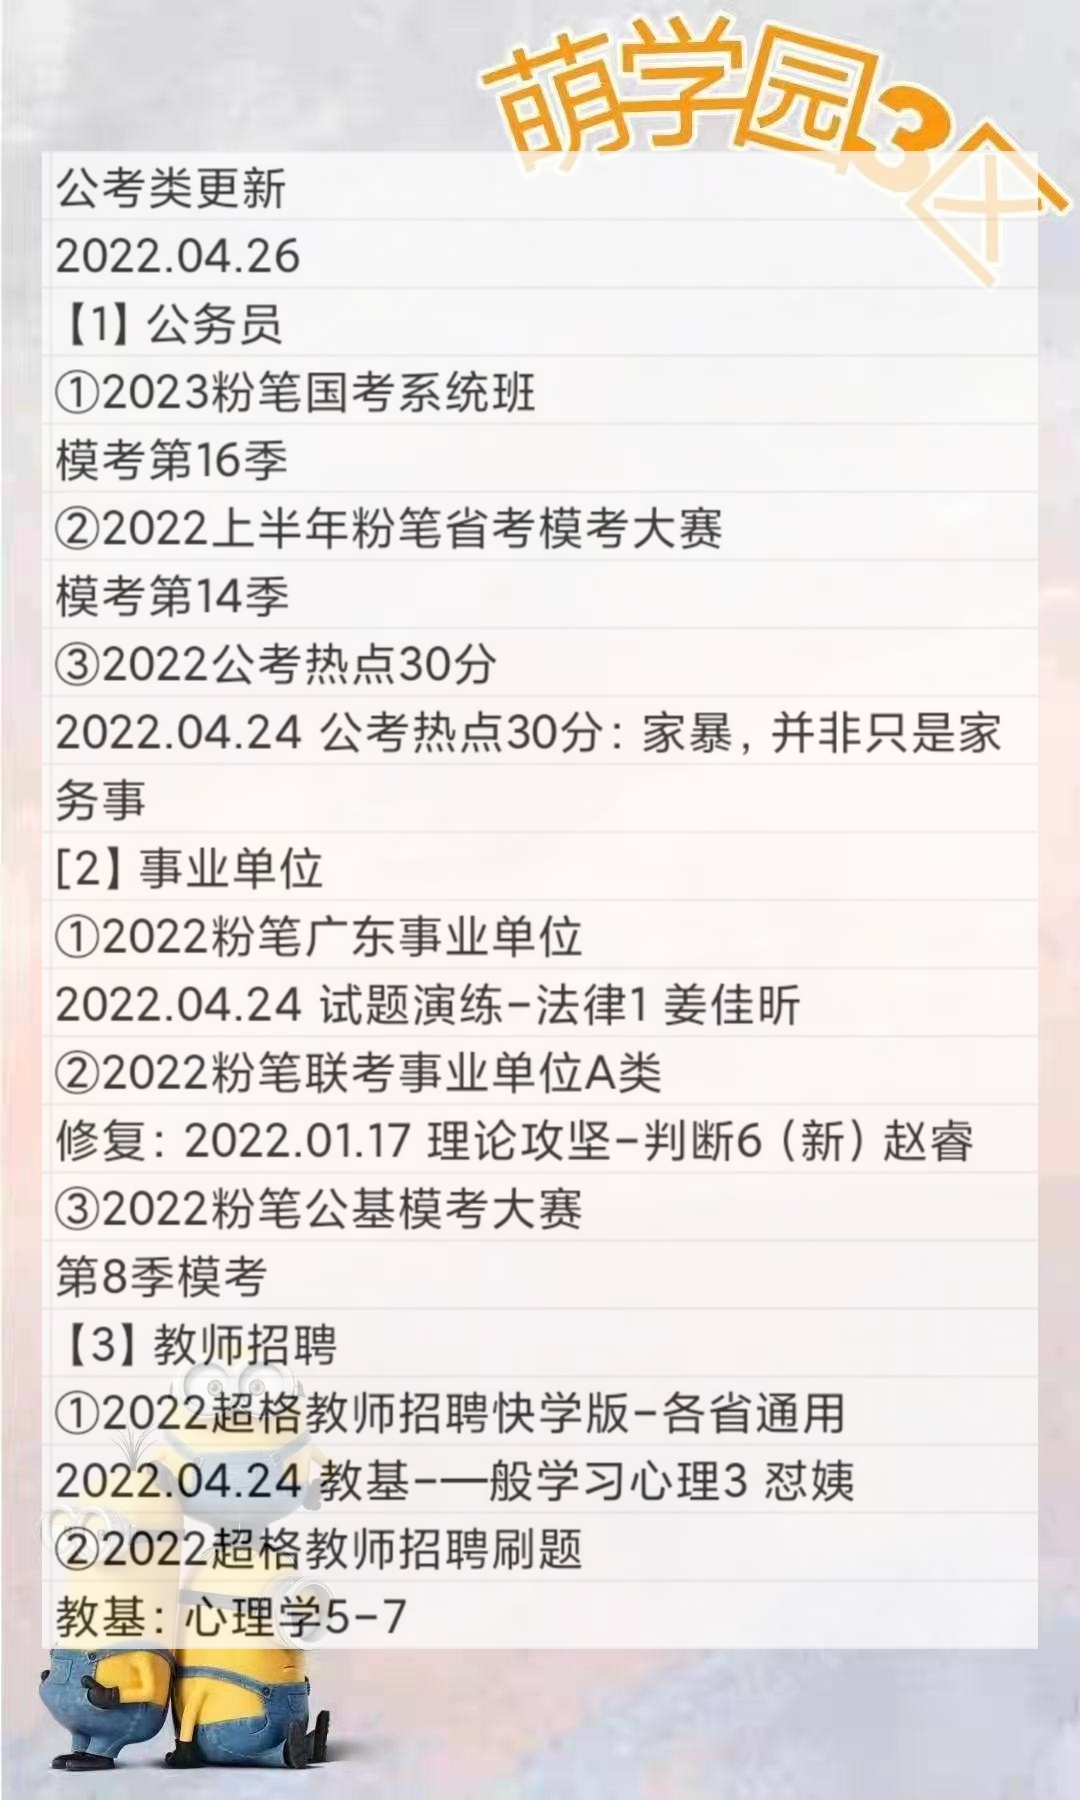 萌学院区04月26号更新 公务员 事业单位2022 教师招聘